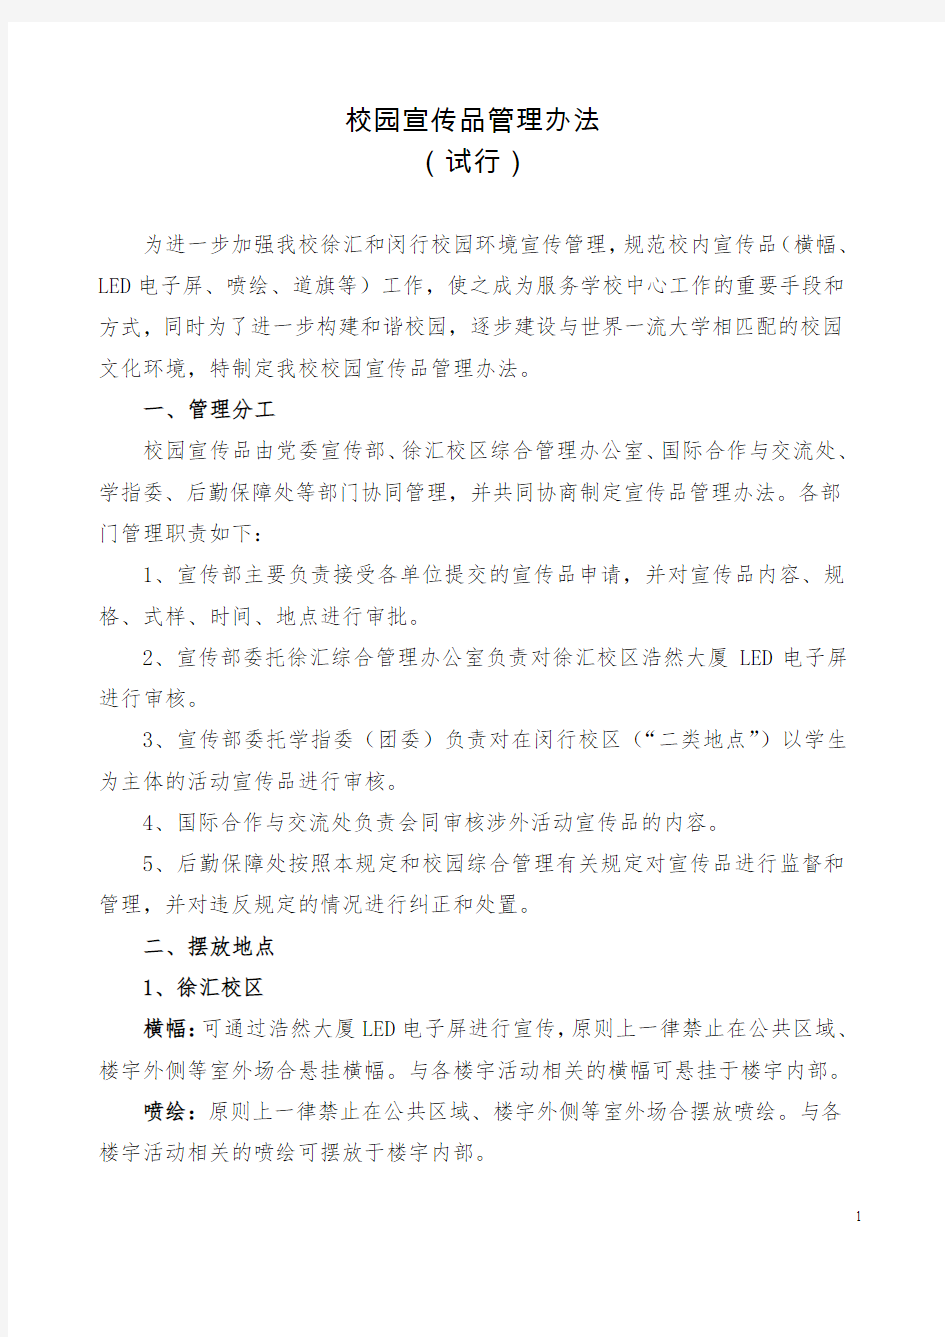 校园活动申请表-上海交通大学